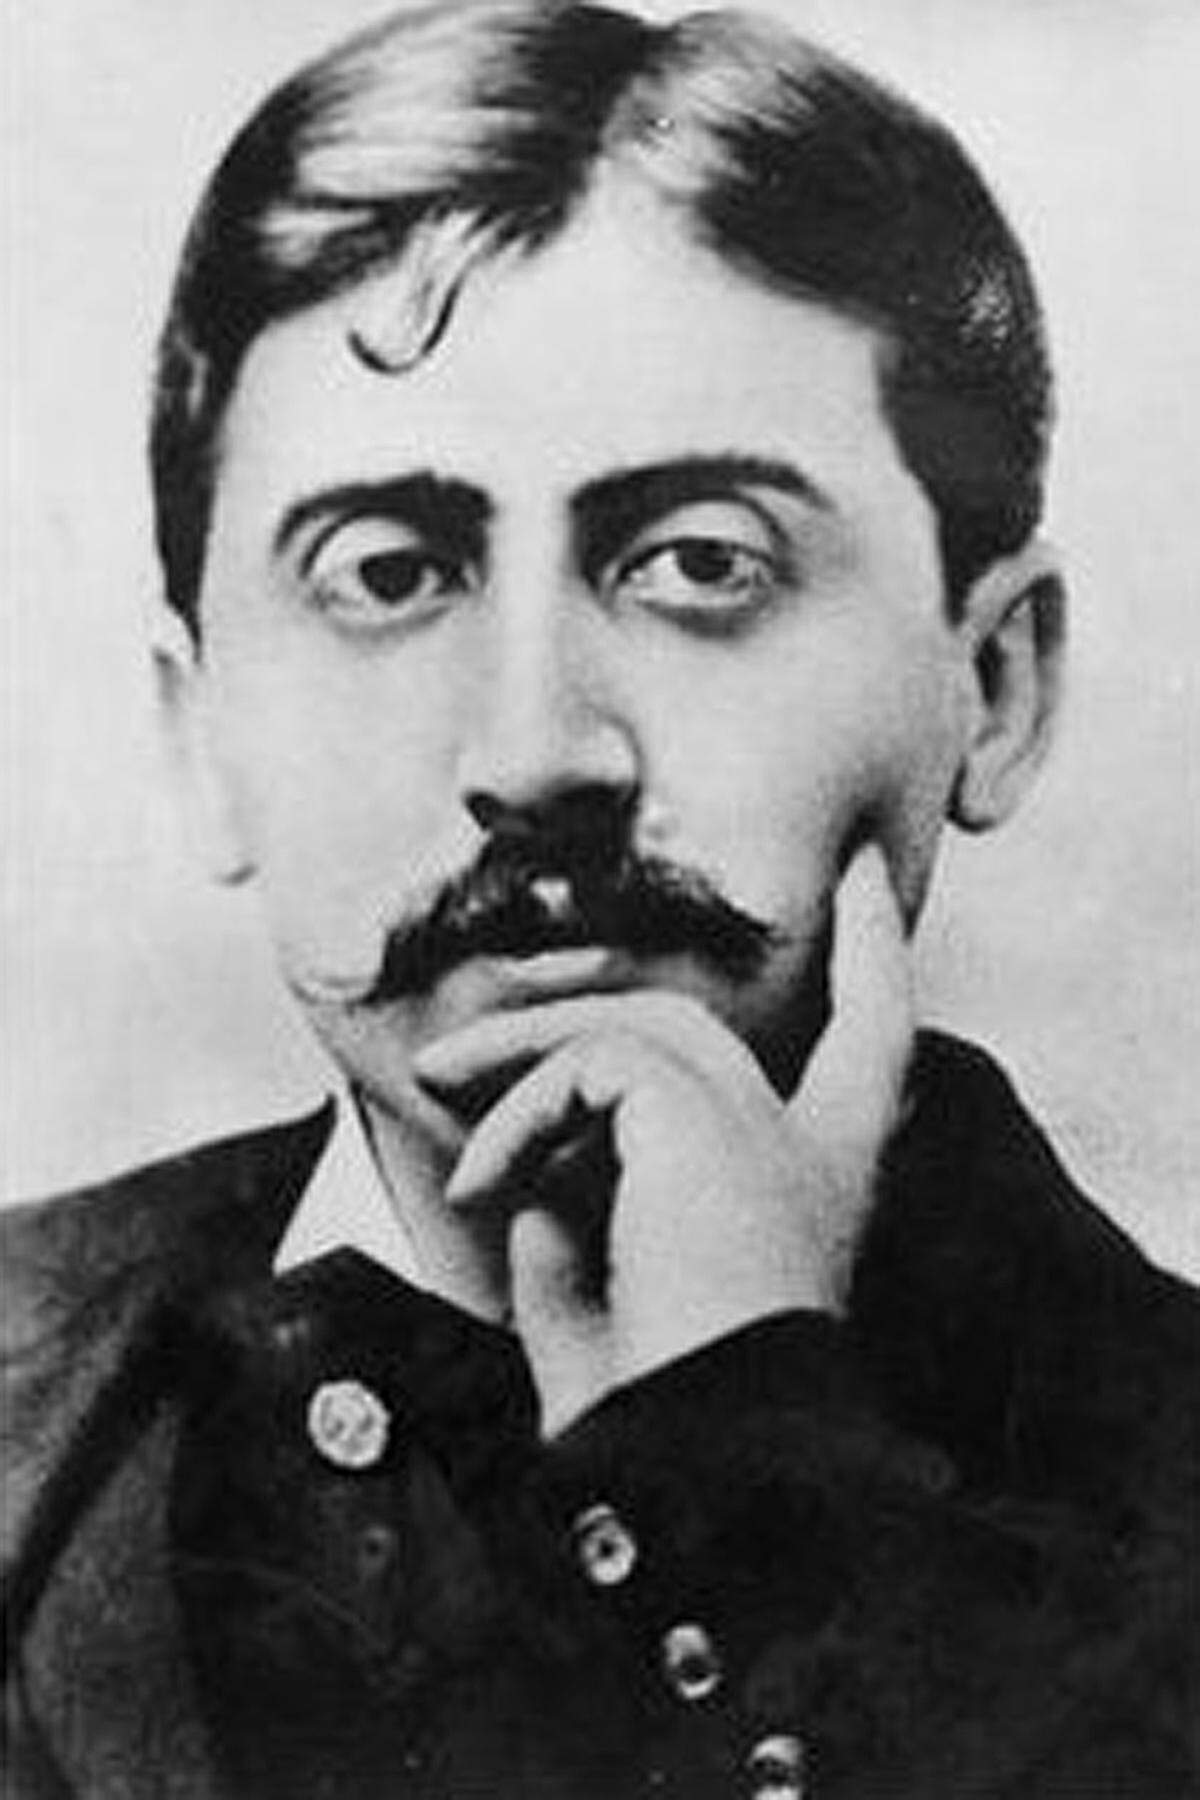 Wie verkneifen uns Wortspiele mit Prousts berühmtesten Werk "Auf der Suche nach der verlorenen Zeit" und weisen schlicht darauf hin, dass es genügend Gelegenheiten gegeben hätte, den kränklichen Franzosen auszuzeichnen. Der immens einflussreiche Schriftsteller soll aber zu kontrovers für die Akademie gewesen sein.